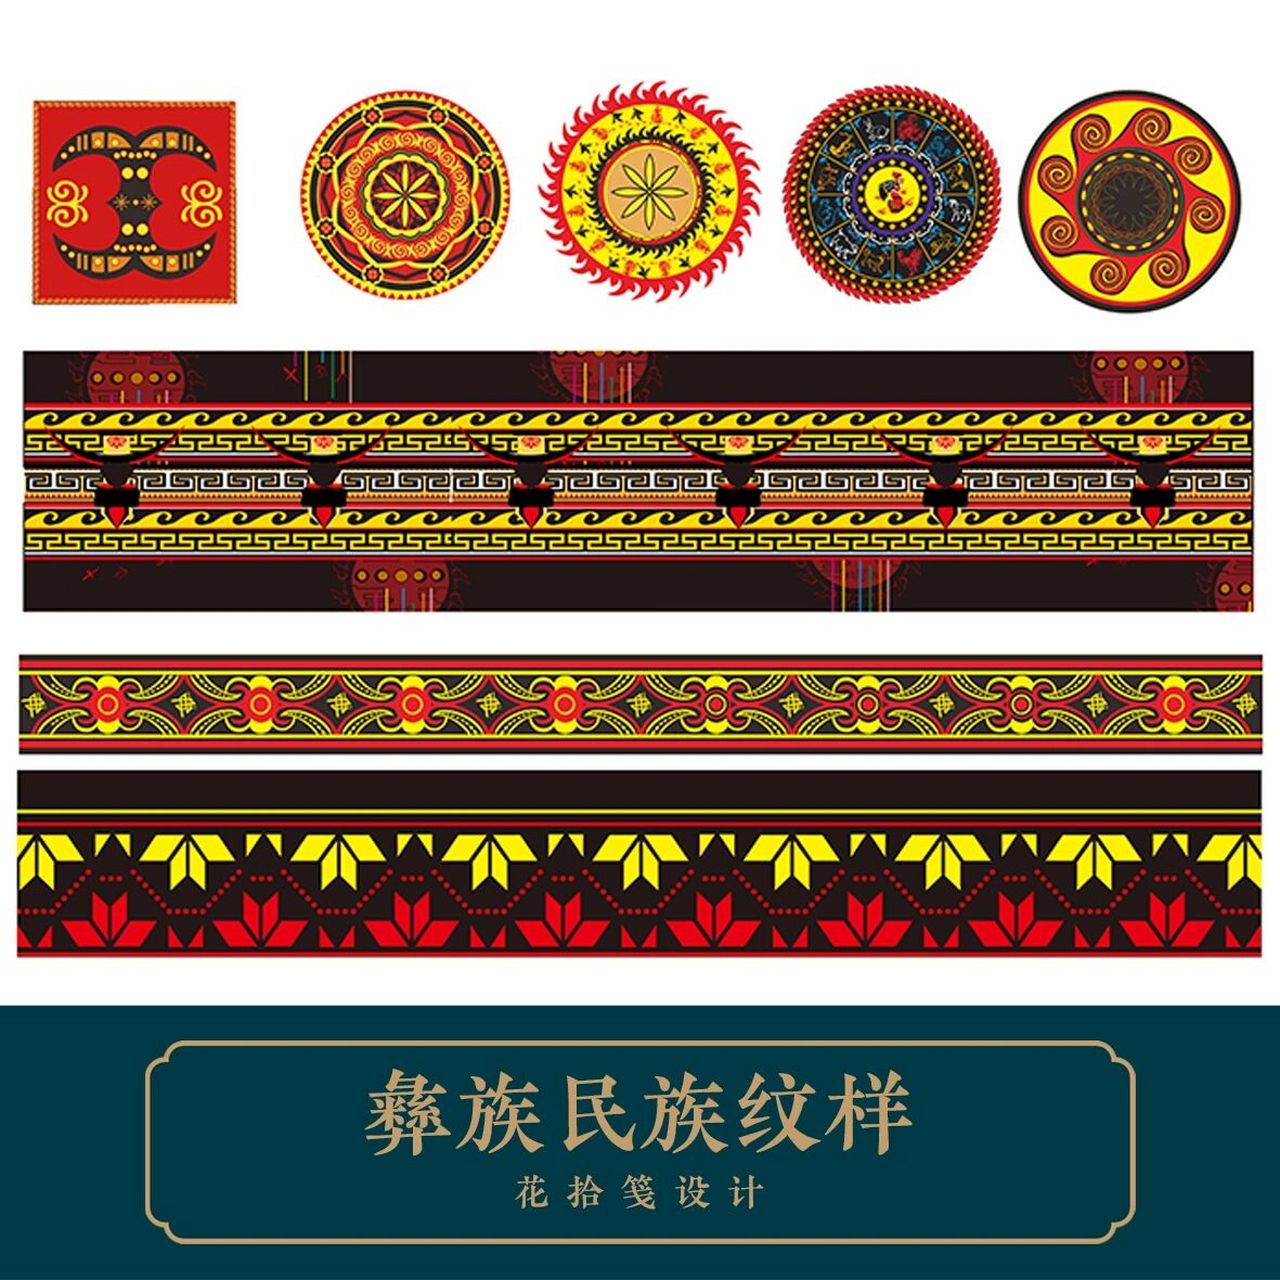 彝族民族纹样矢量素材 彝族民族纹样